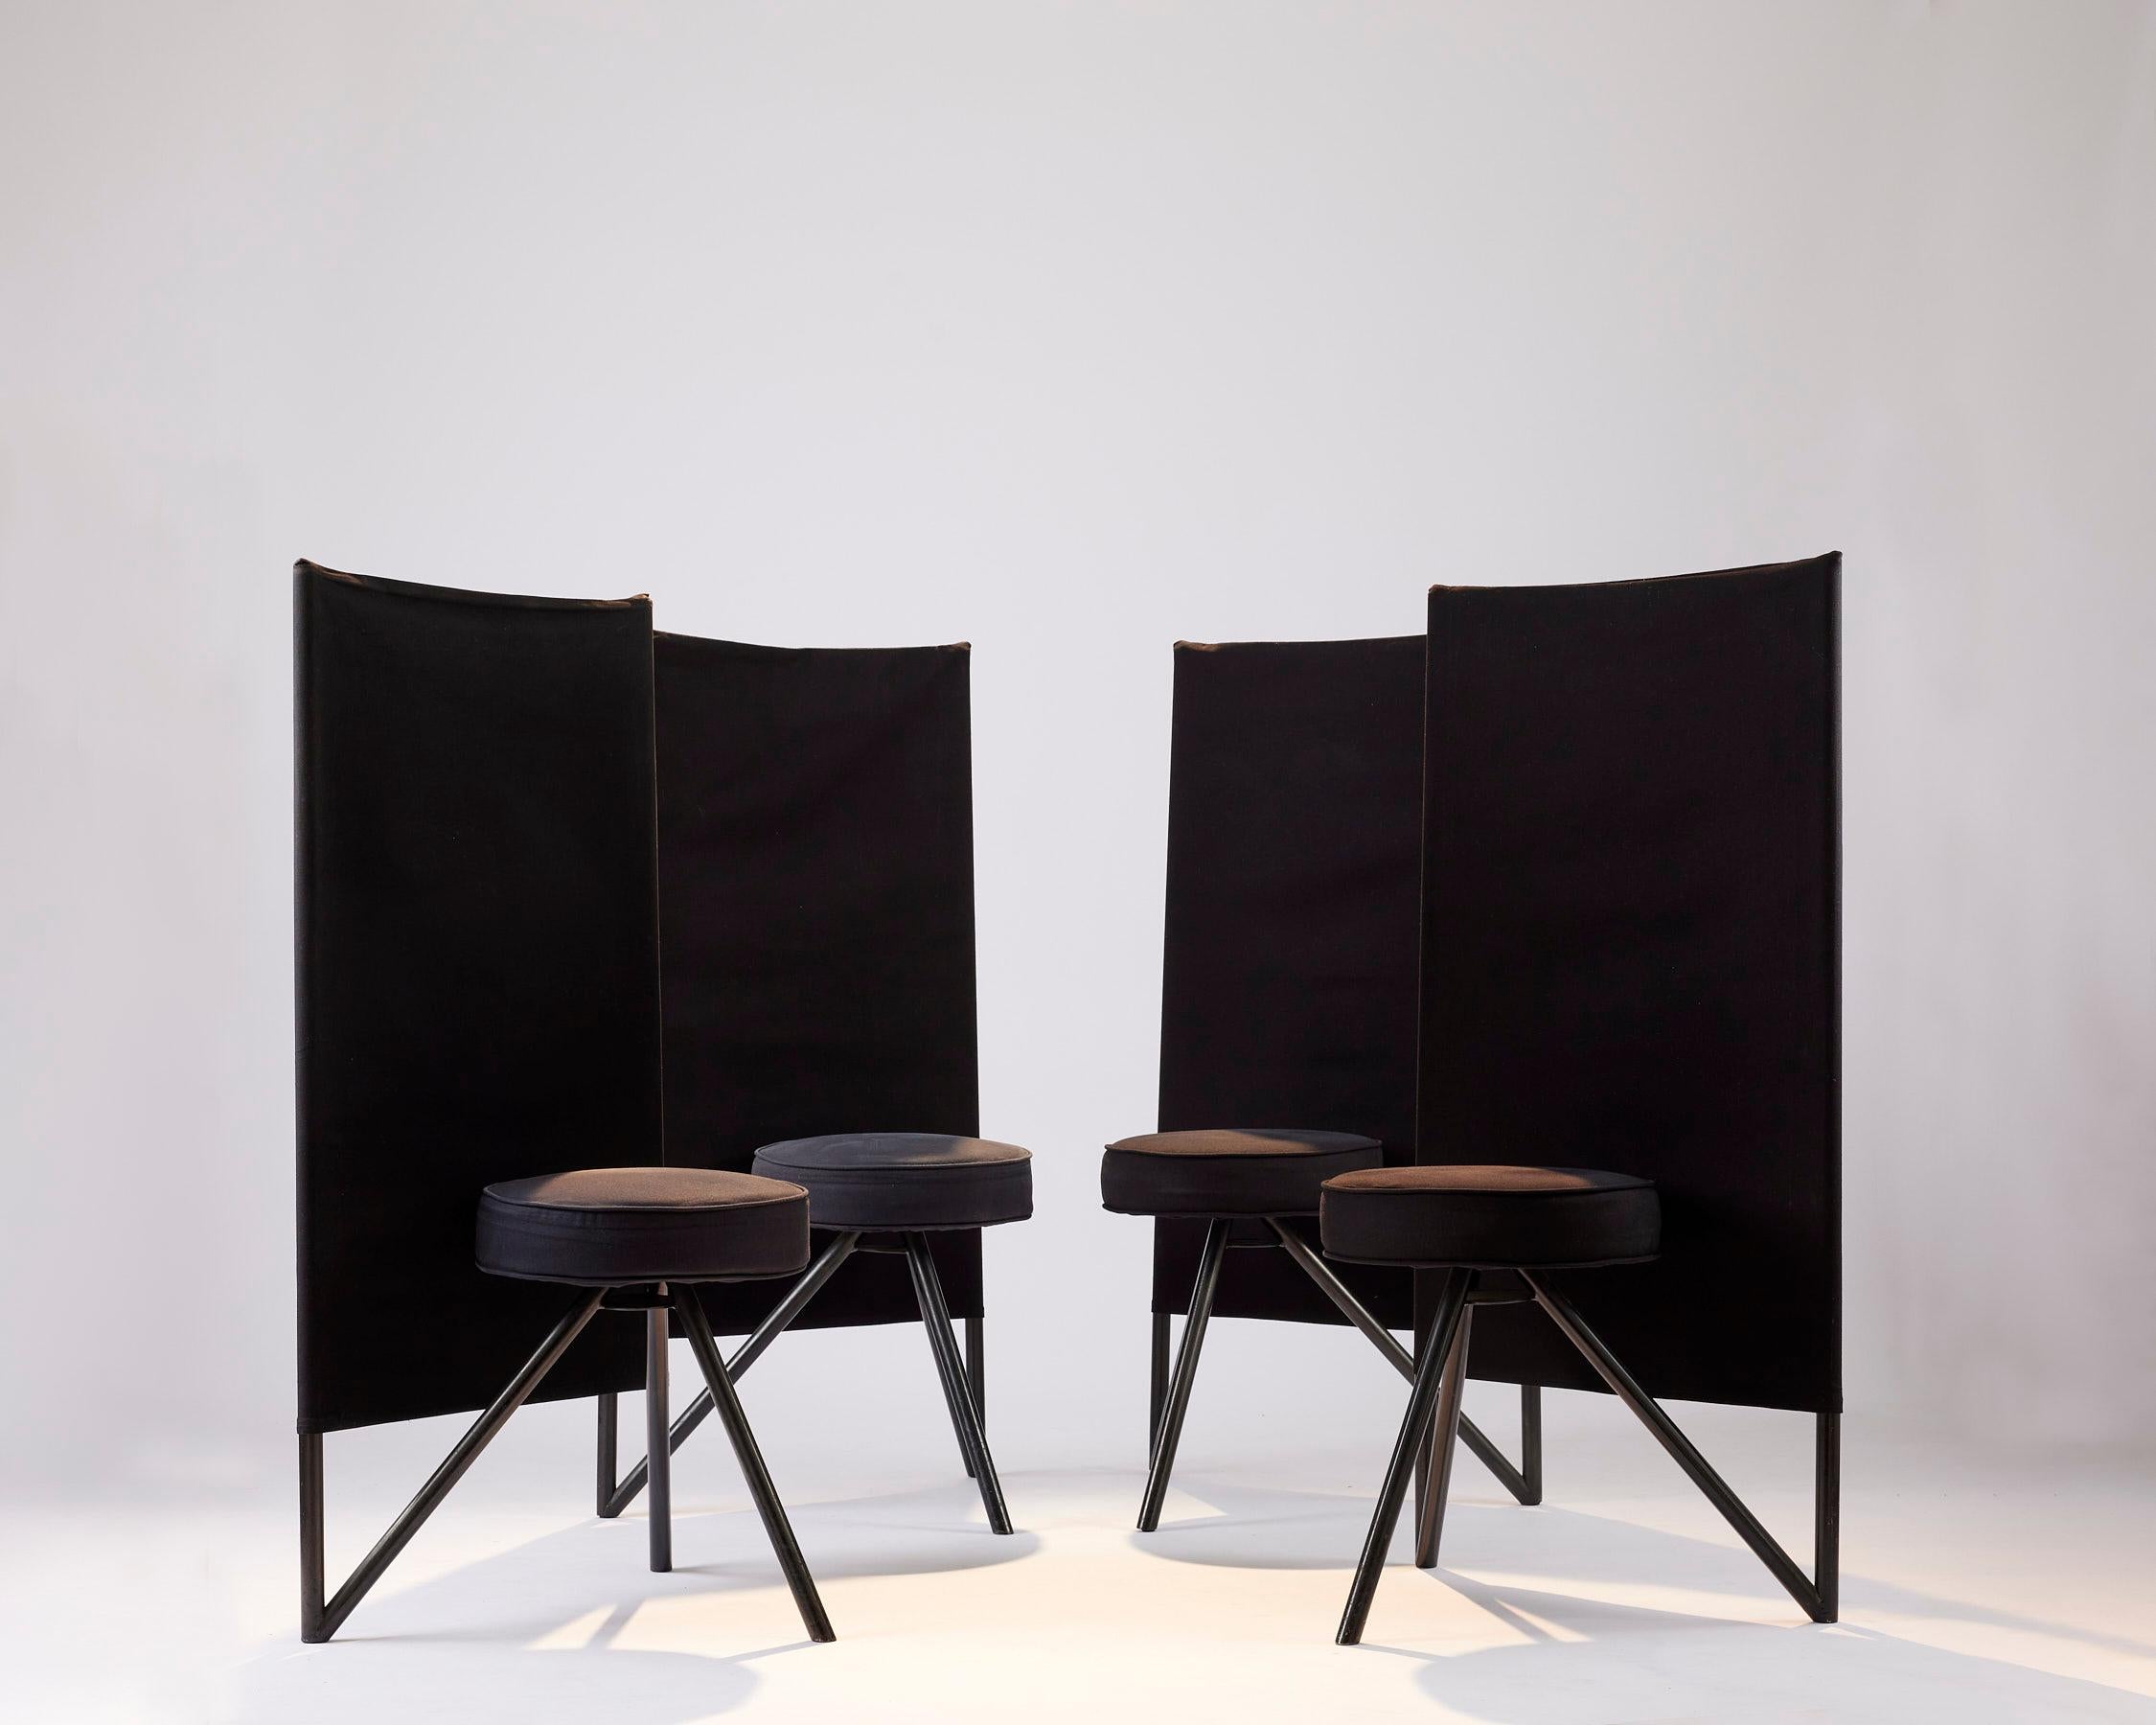 Philippe Starck (Né en 1949)
Chaises Miss Cirt, c. 1983
Disform Barcelona éditeur 
Ensemble de 4 chaises tripode
Tube de métal, toile de coton
Mesures : H. 114 cm - L. 58 cm - P. 40 cm